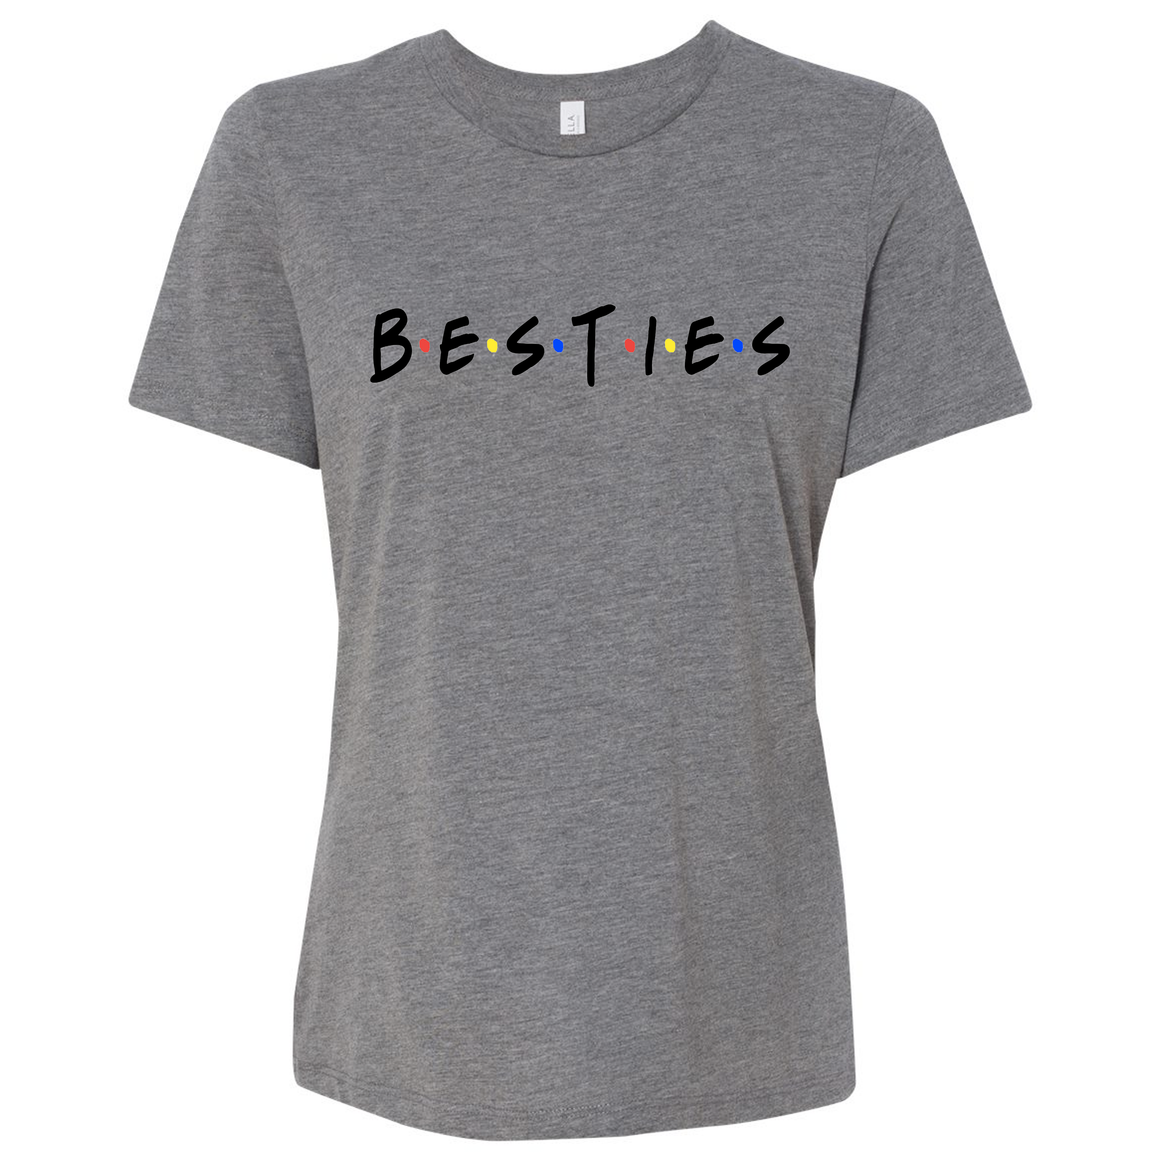 Triblend Women's Besties "Friends" Themed Relaxed T-Shirt